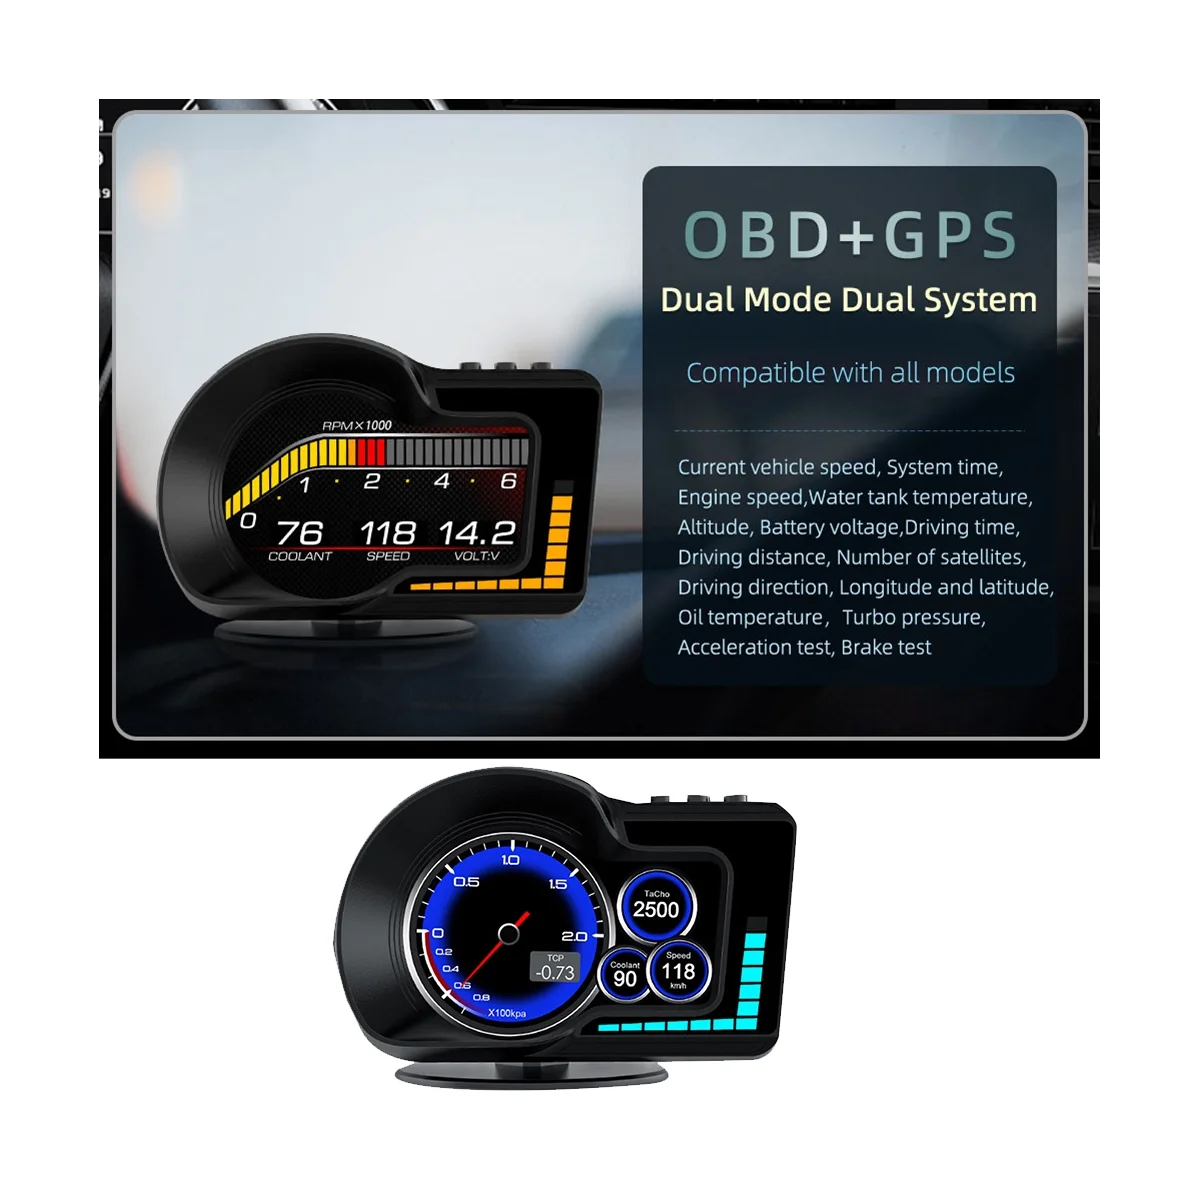 

OBD2 EOBD Многофункциональный ЖК-дисплей OBD + GPS HUD автомобильный компьютер Автомобильный дисплей в режиме реального времени спидометр для всех автомобилей